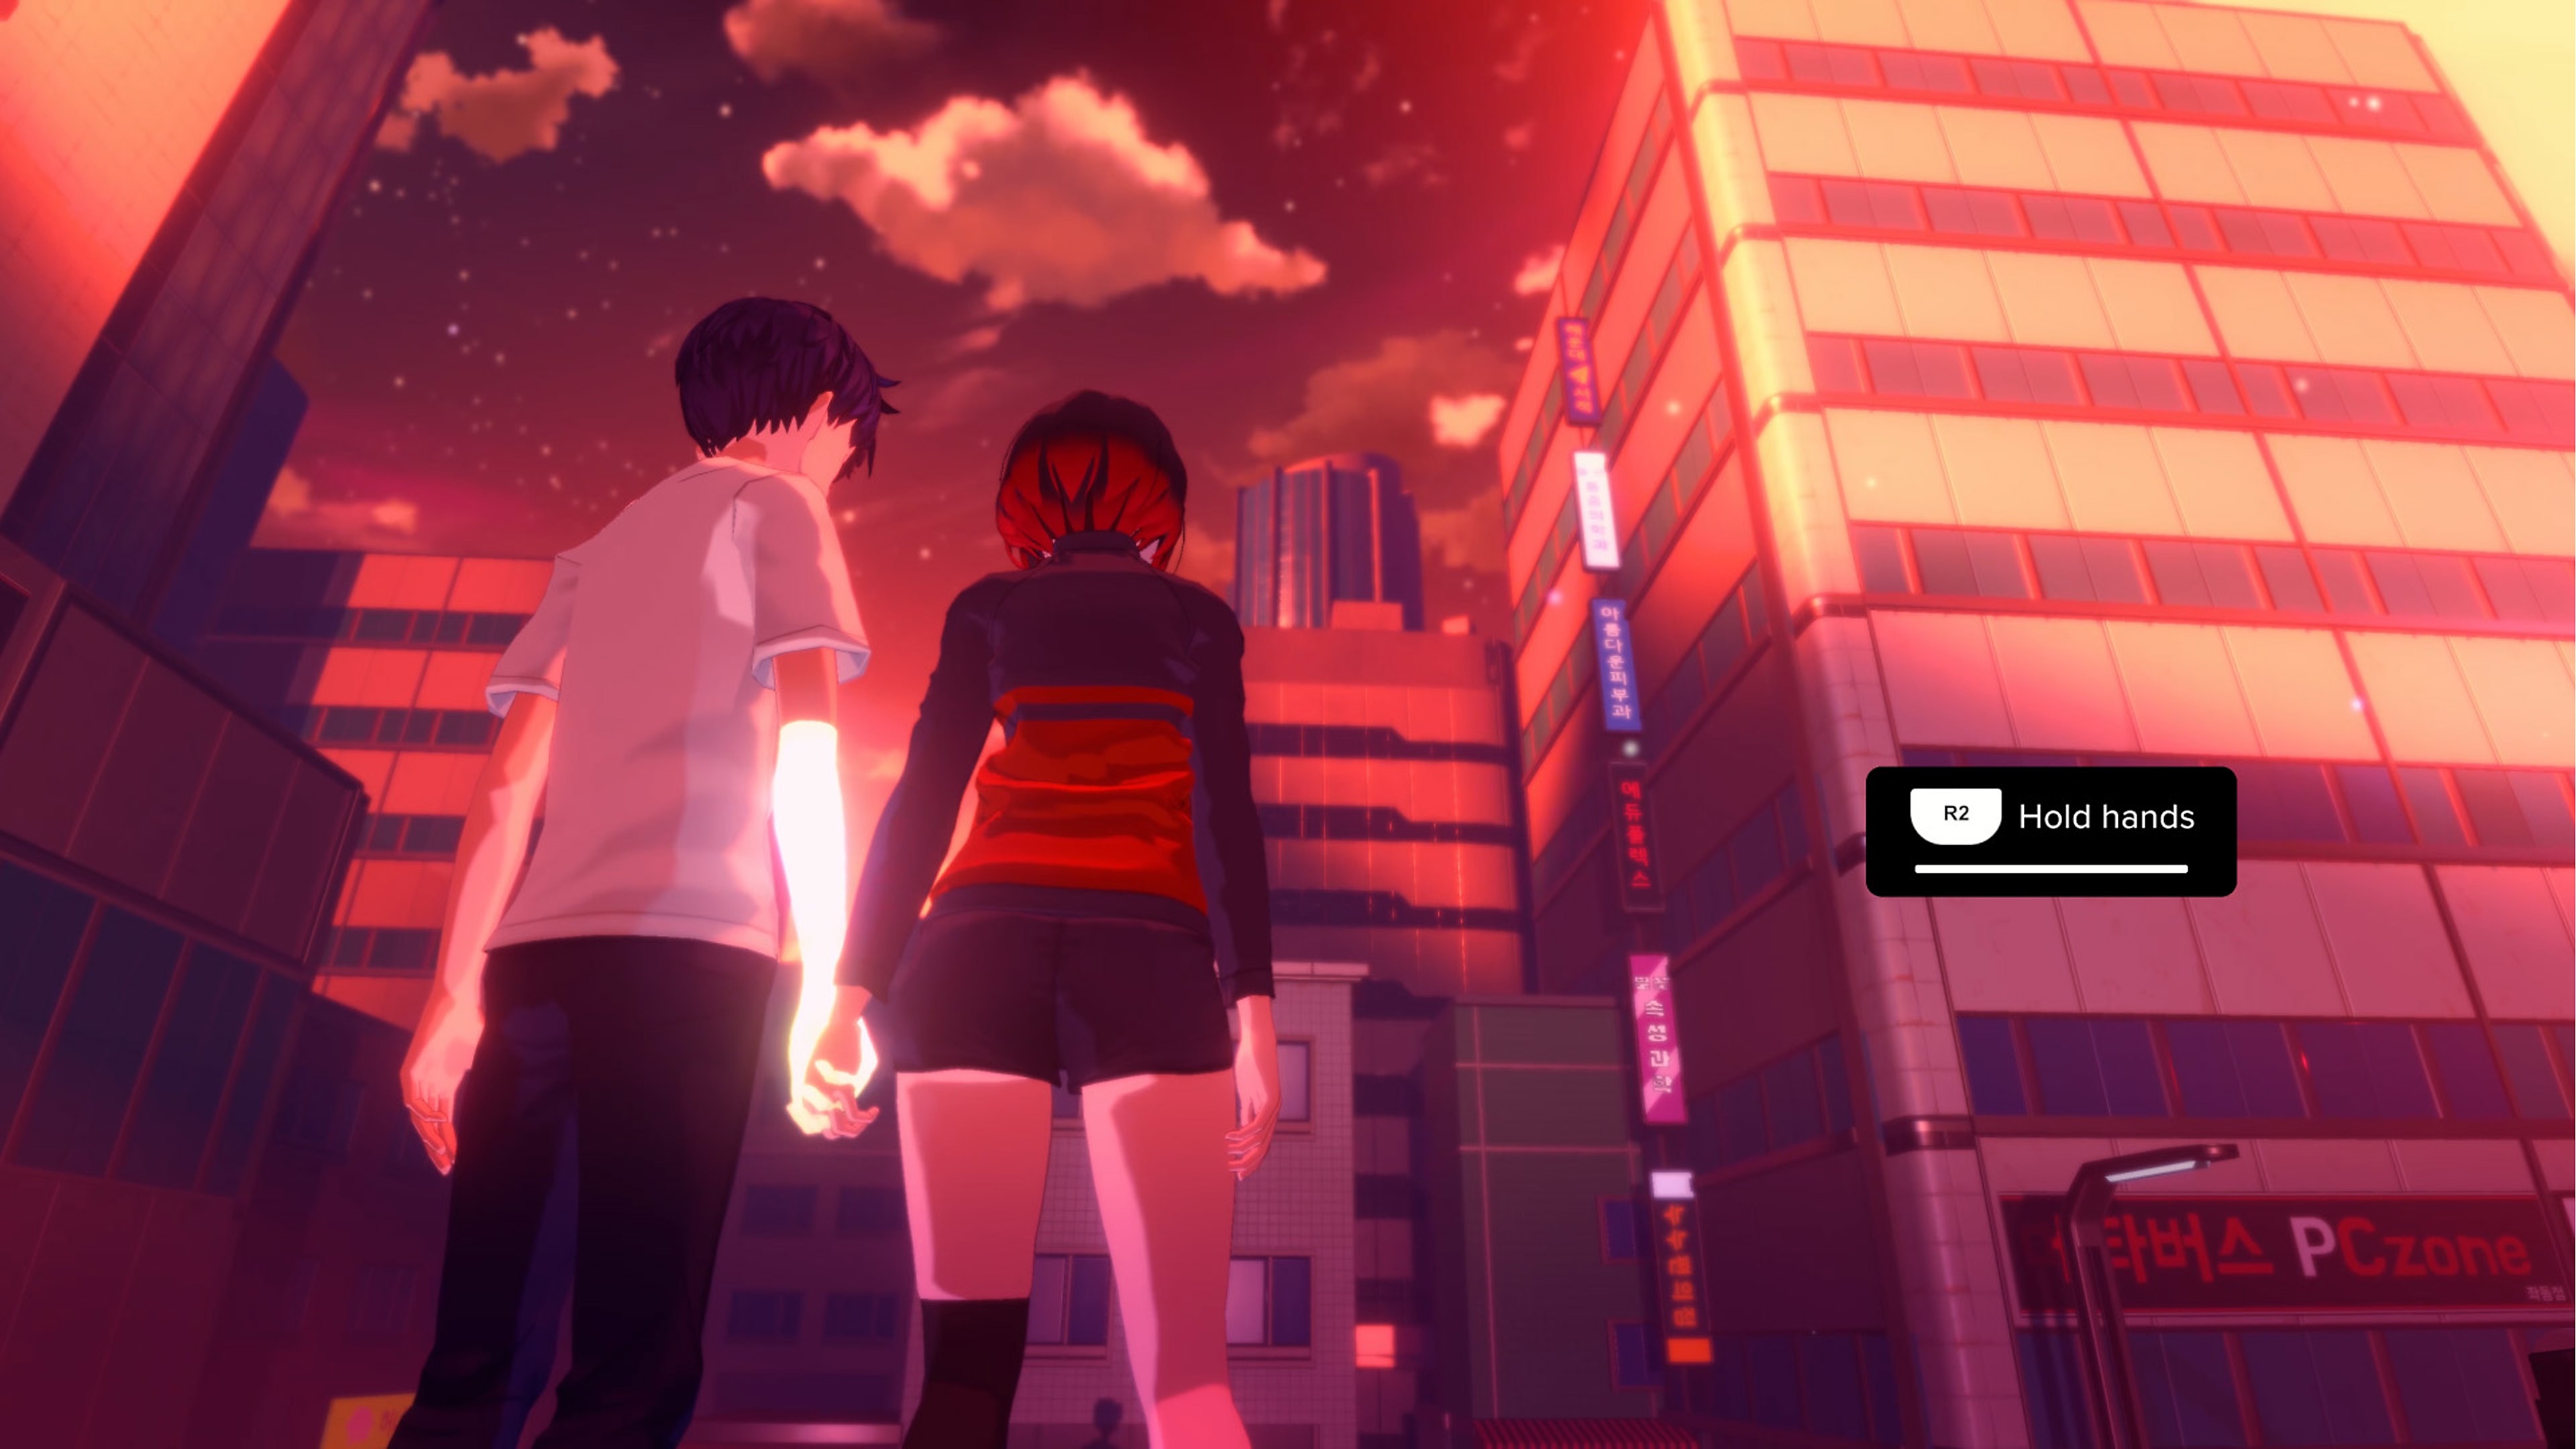 Eternights - Istantanea della schermata che mostra due personaggi liceali che si tengono per mano davanti a un paesaggio urbano con alti grattacieli.